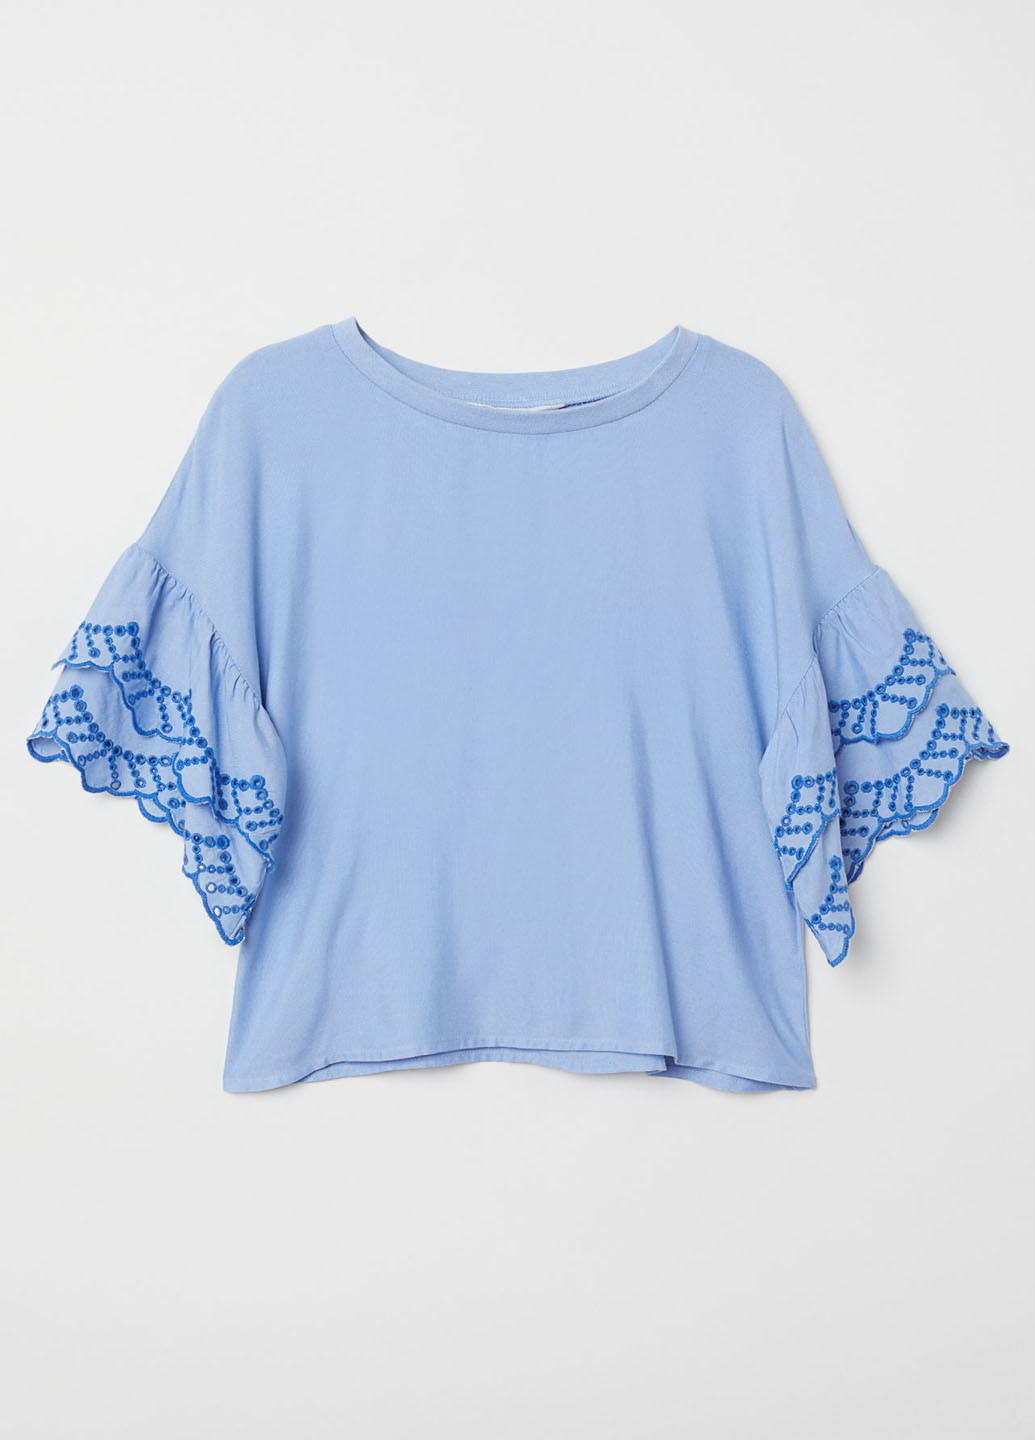 Голубая однотонная блузка с коротким рукавом H&M летняя